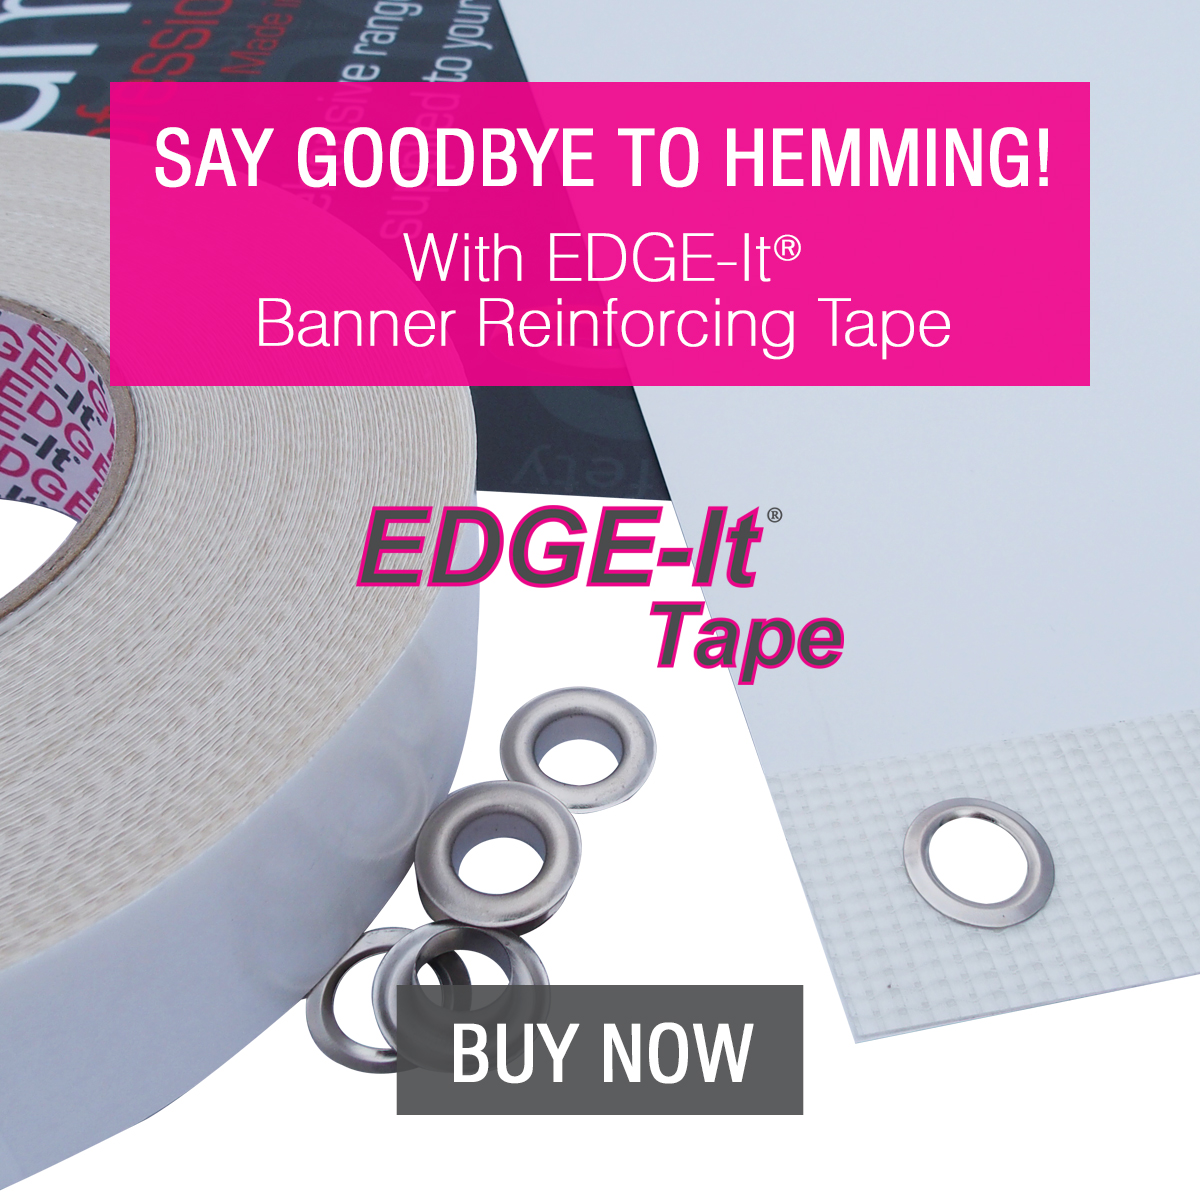 EDGE-It Banner Reinforcing Tape